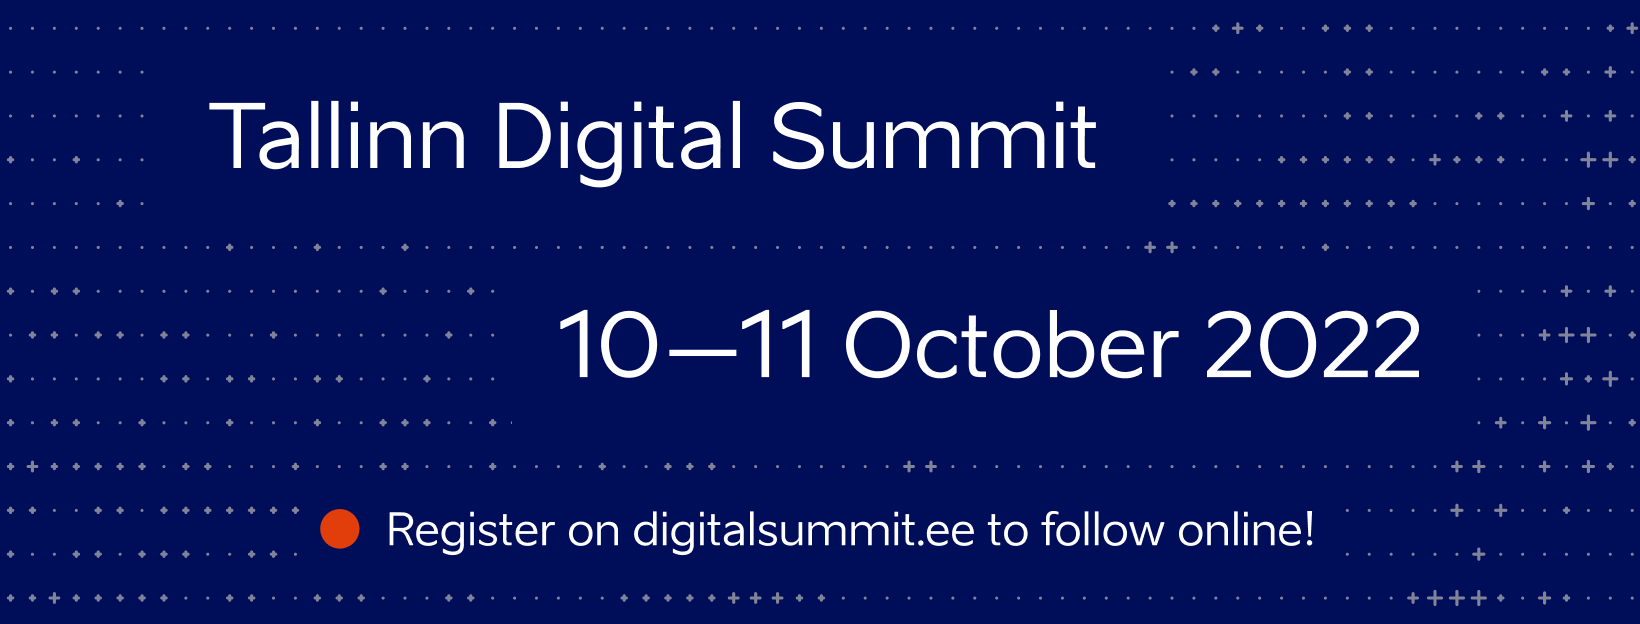 14887Tallinn Digital Summit